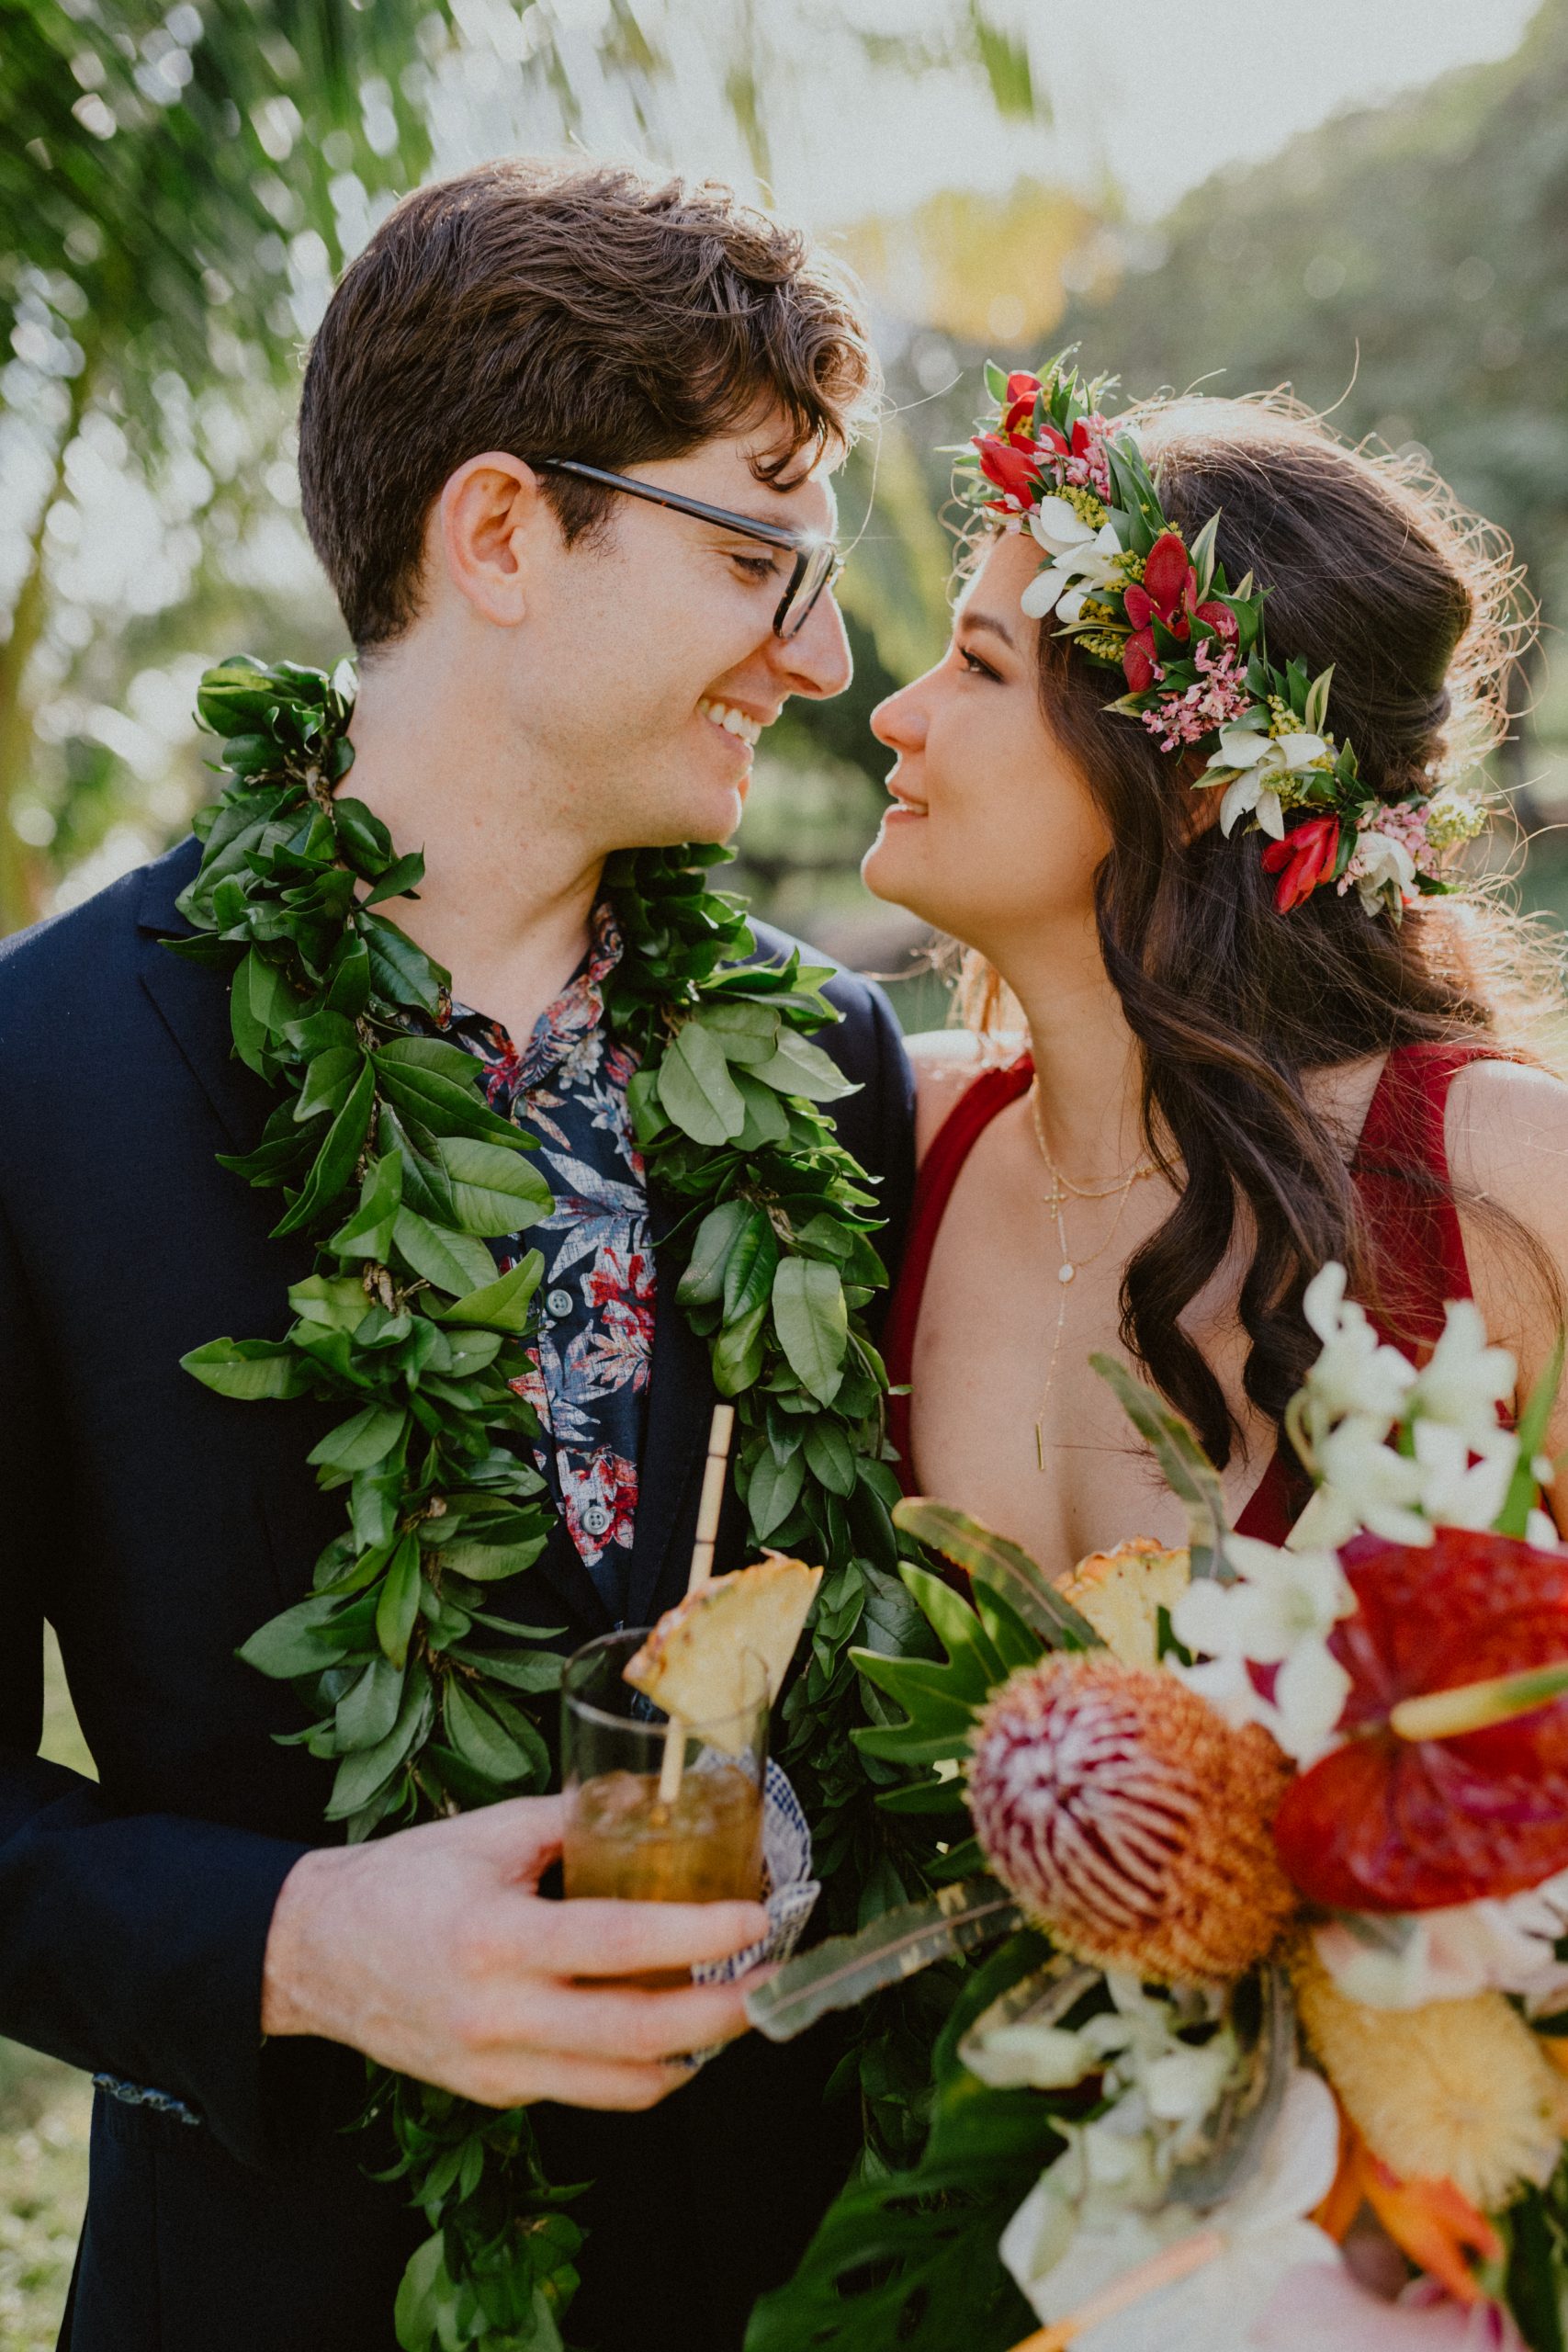 Hawaii Wedding Ideas, Hawaii Wedding Inspiration, Hawaii Wedding Day Photography, Hawaii Elopement Photographer, Hawaii Wedding Photography, Bride and Groom Wedding Day Inspiration